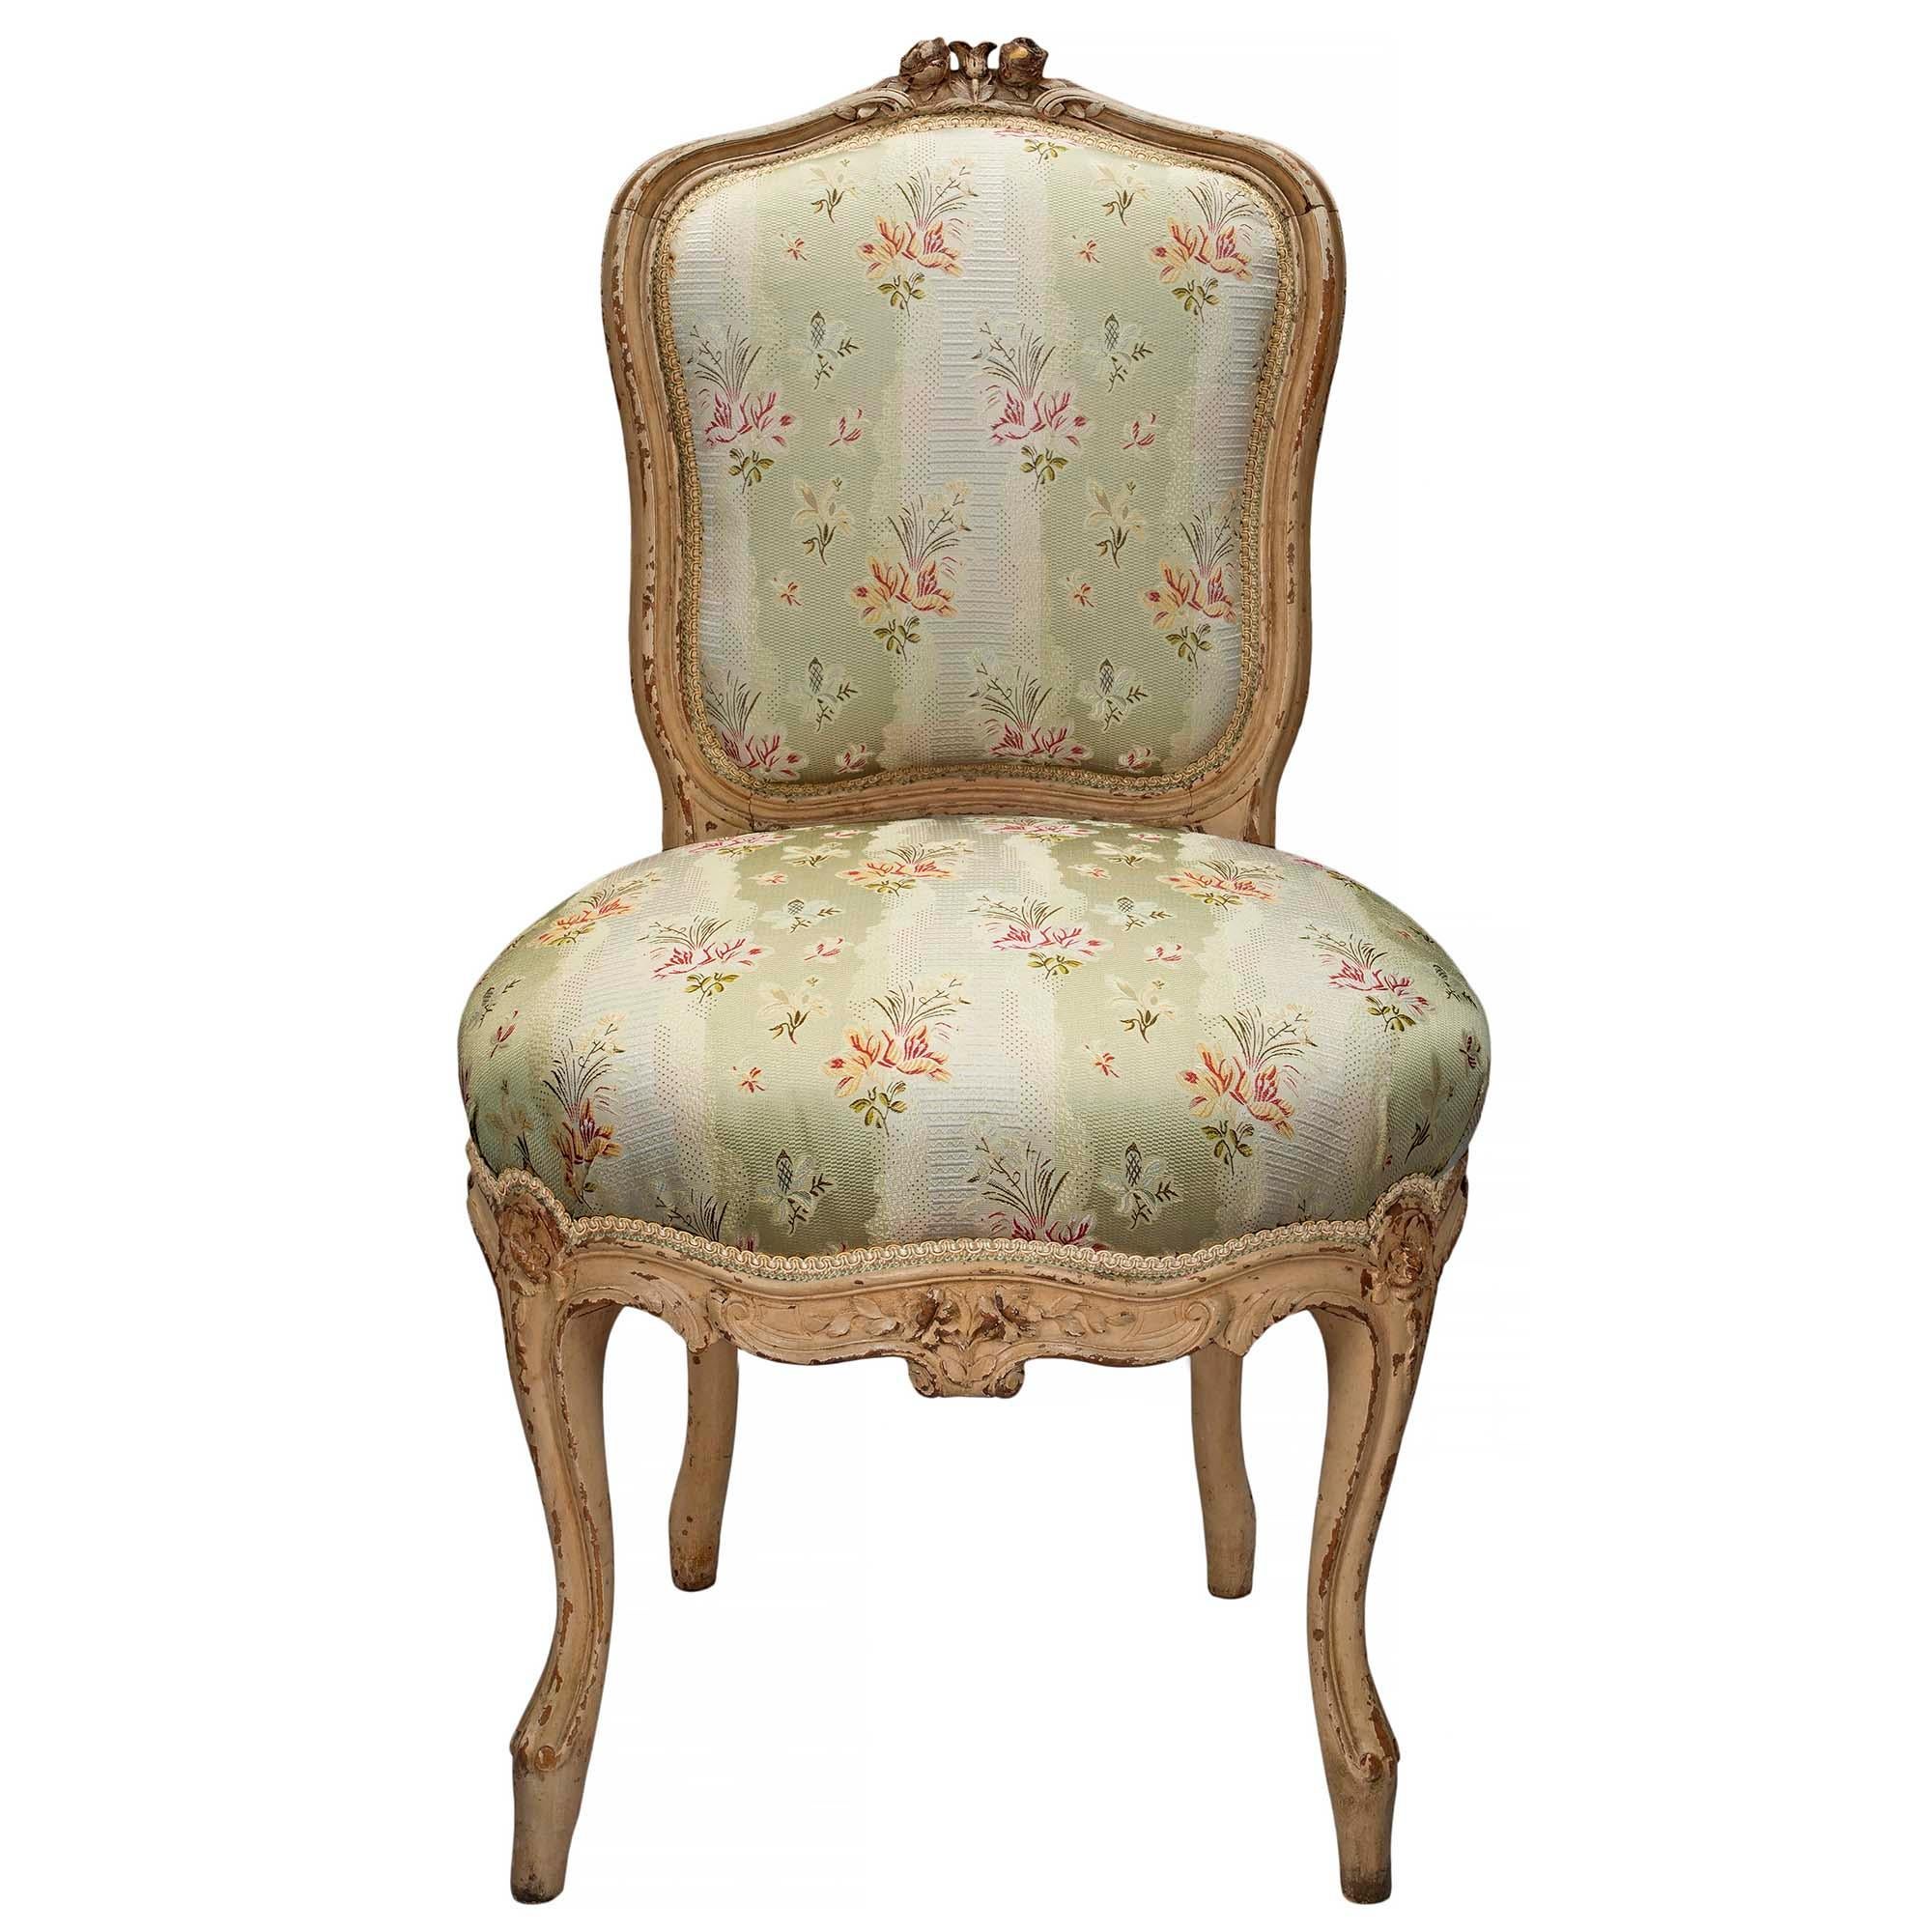 Un ensemble exquis et élégant de quatre chaises françaises du milieu du 19ème siècle de style Louis XV, richement sculptées, patinées et de couleur blanc cassé. L'ensemble repose sur des pieds cabriole à volutes en forme de 